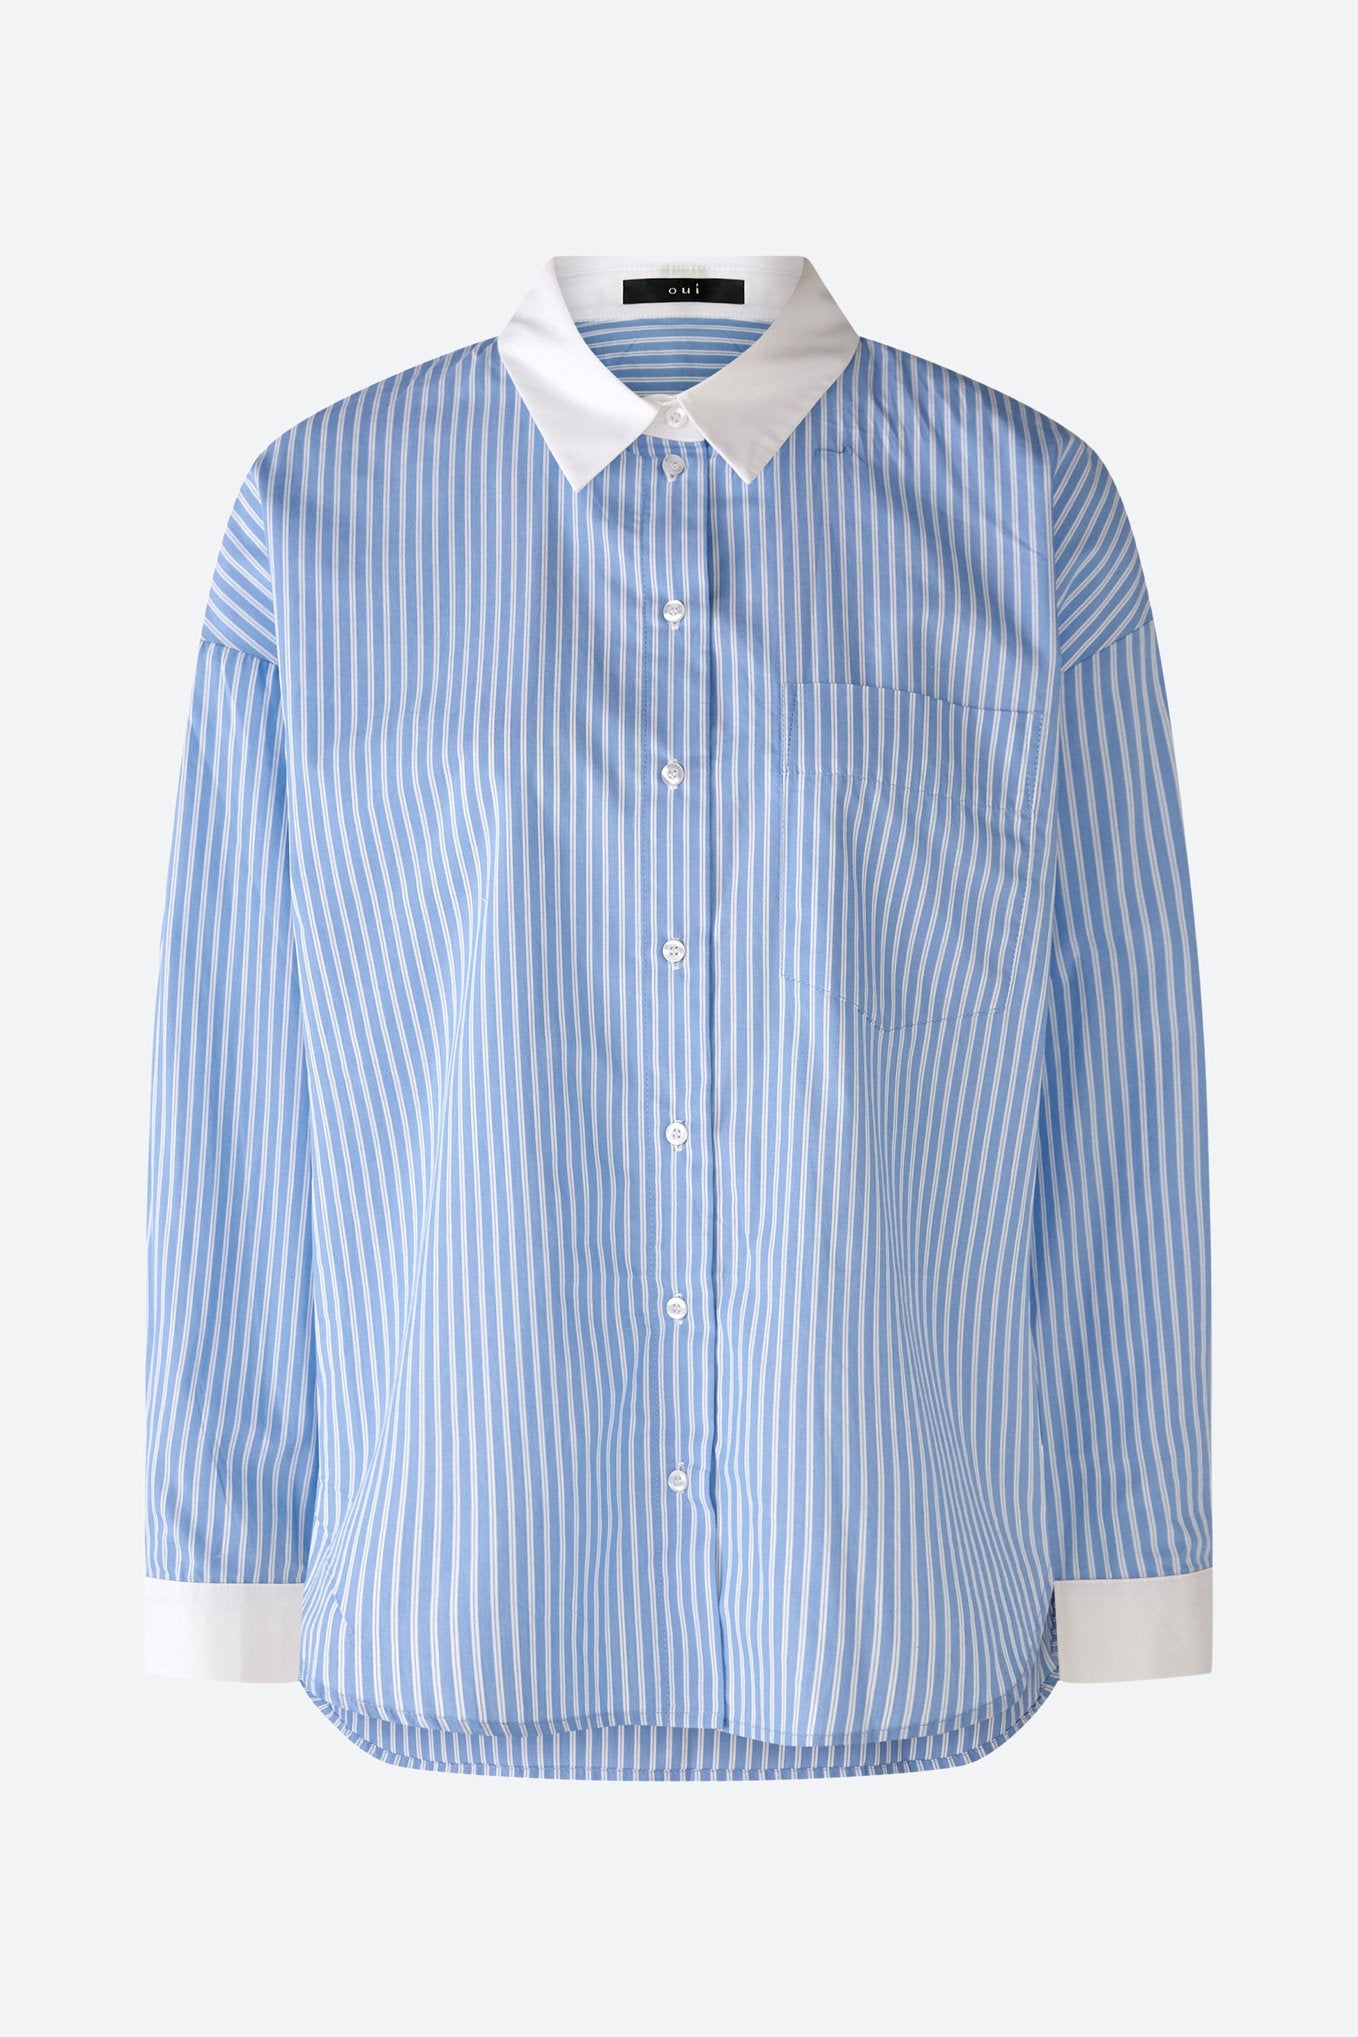 Shirt Blouse Pure Cotton_79258_0521_05